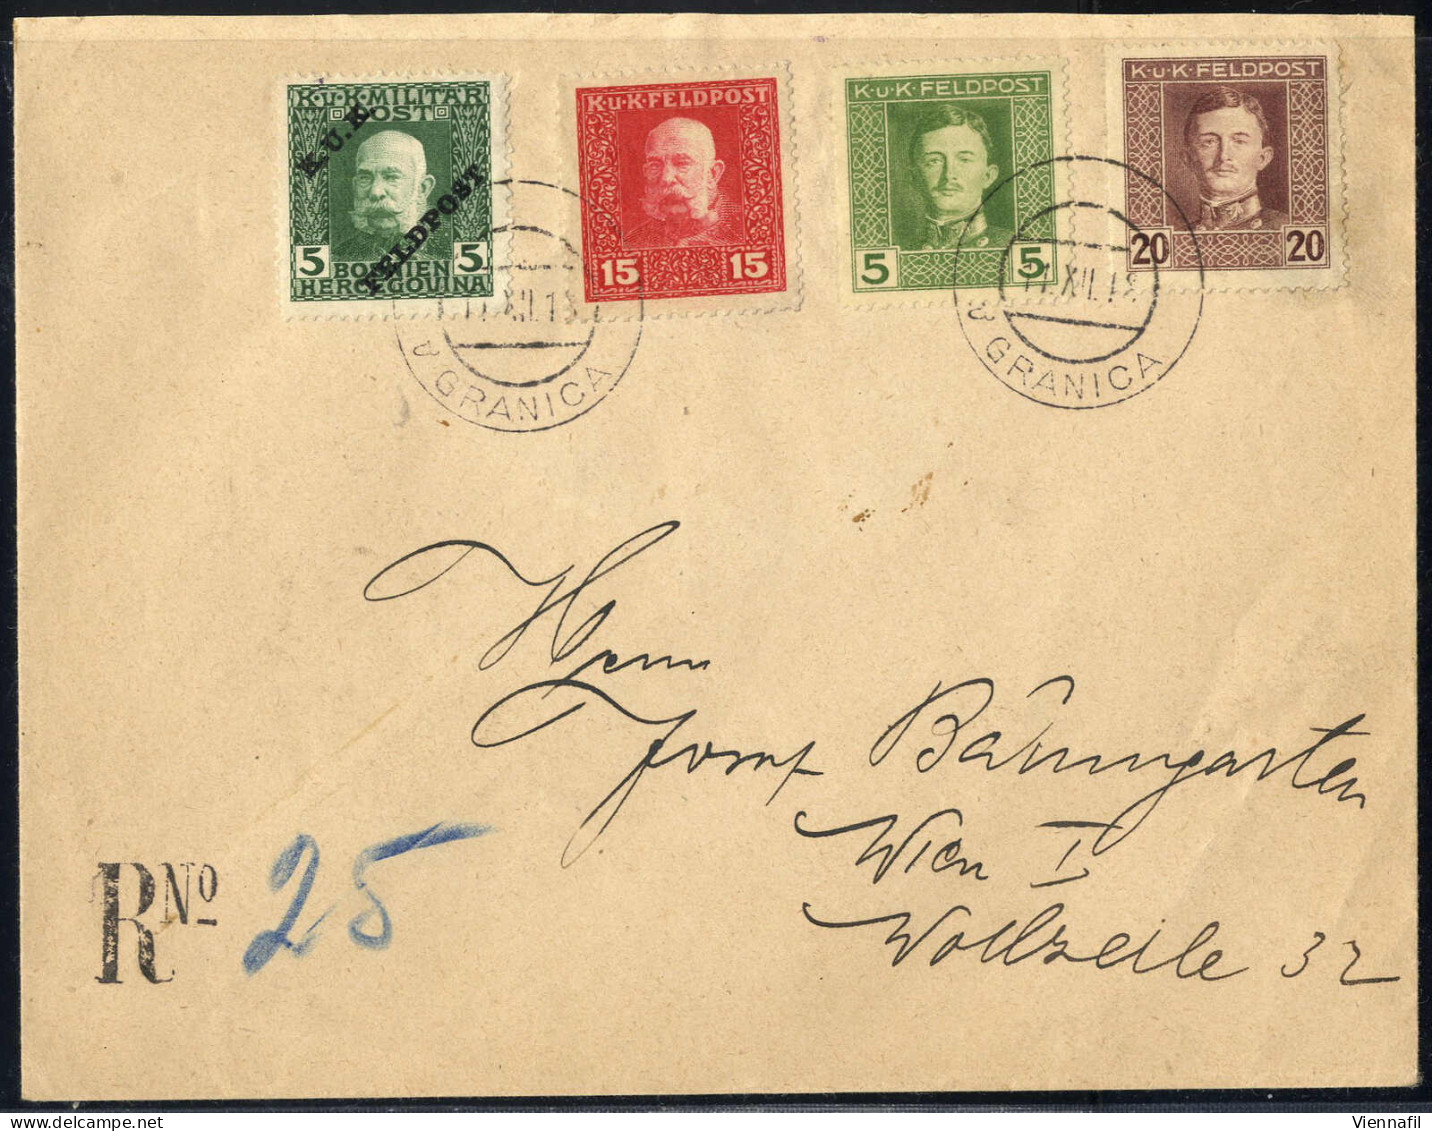 cover FELDPOST 1914/18: Lot von 22 Poststücken, darunter Rekobriefe nach Belgrad und Wien (dieser mit Einzelfrankatur 2 